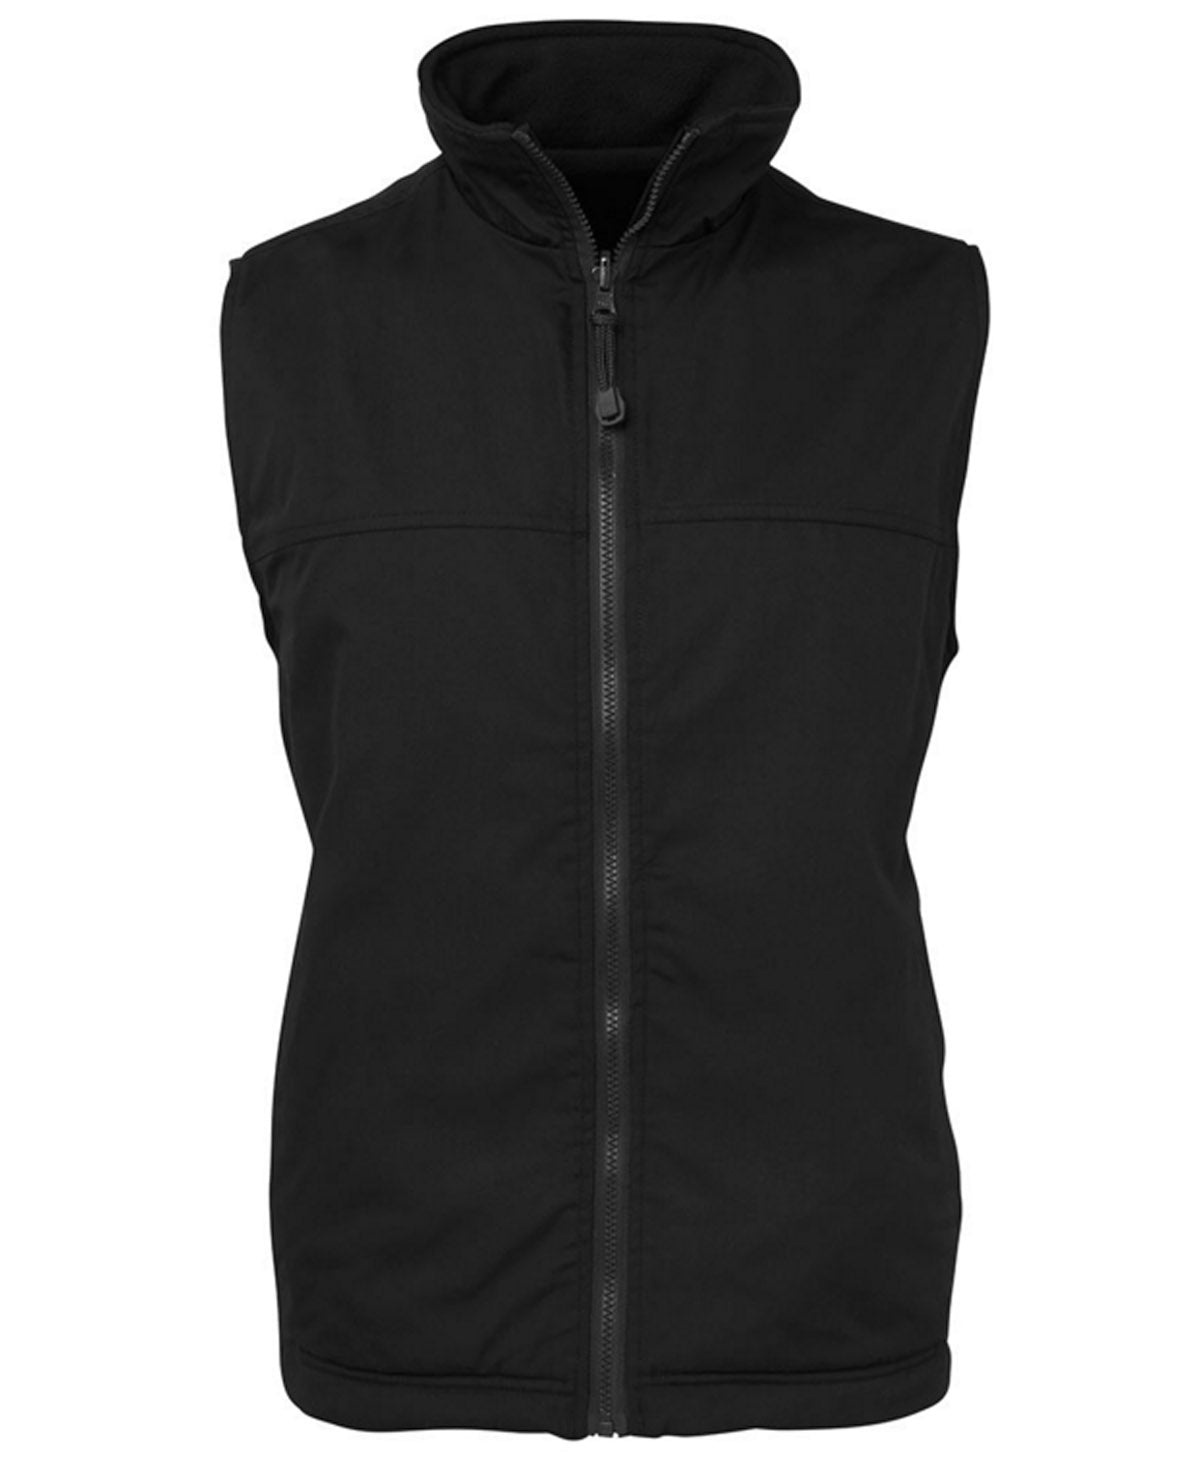 JBs Reversible Vest - NAVY BLACK Mens Vest by JBs Wear | The Bloke Shop